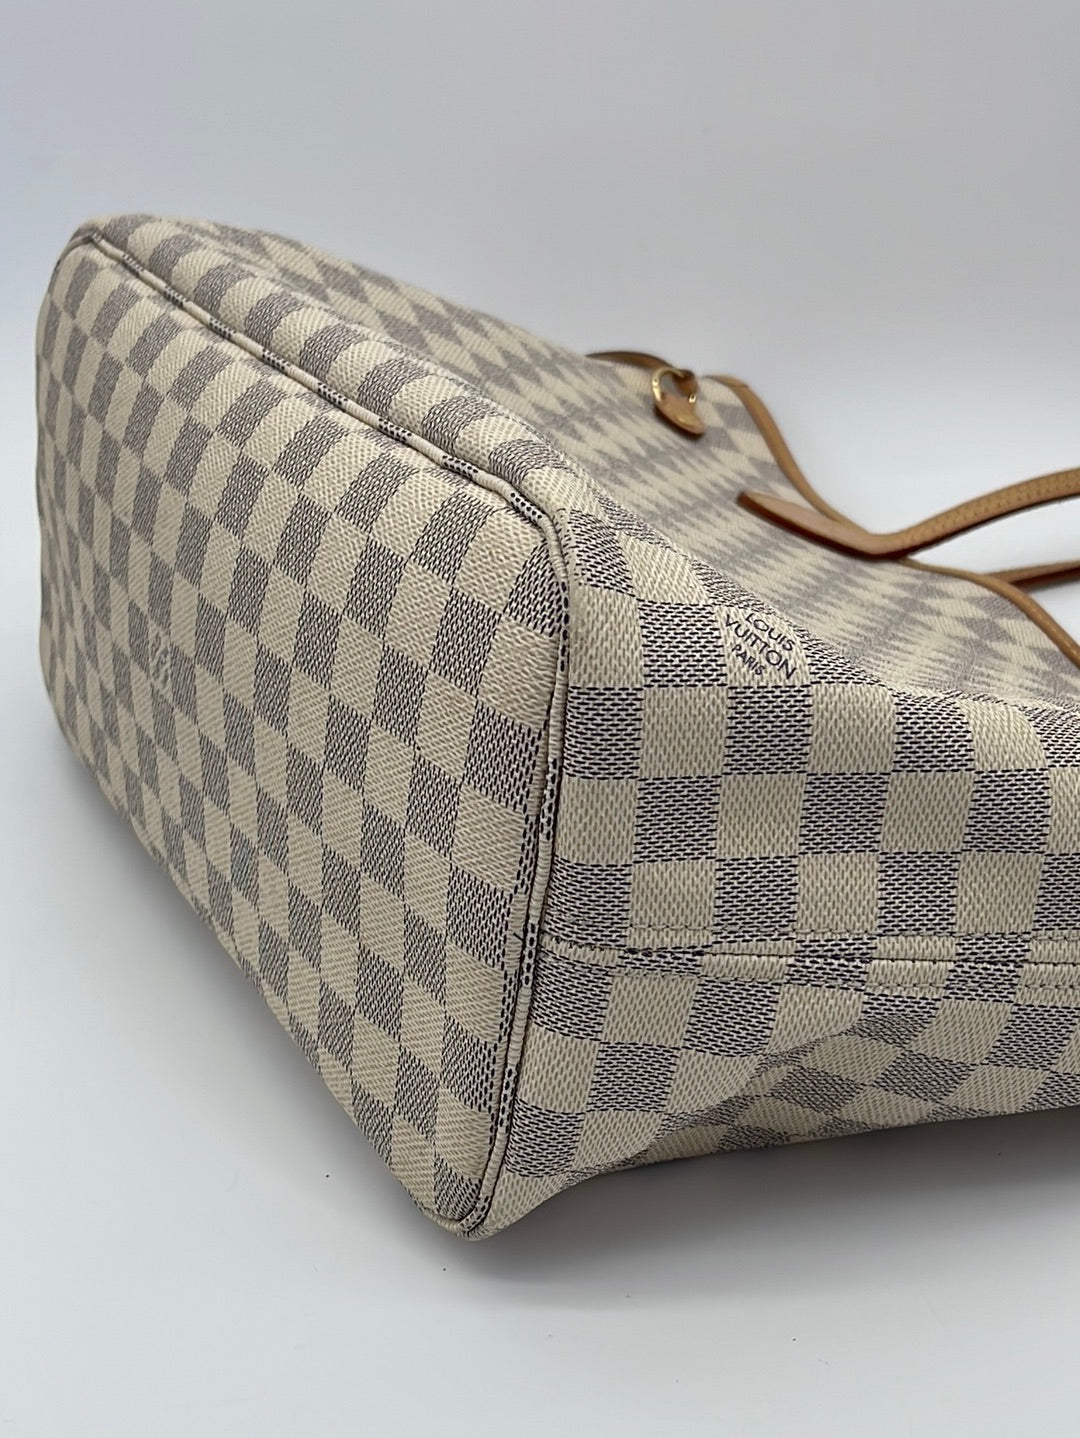 Louis Vuitton Hampstead Azur Handbag Tote - PreLoved Treasures